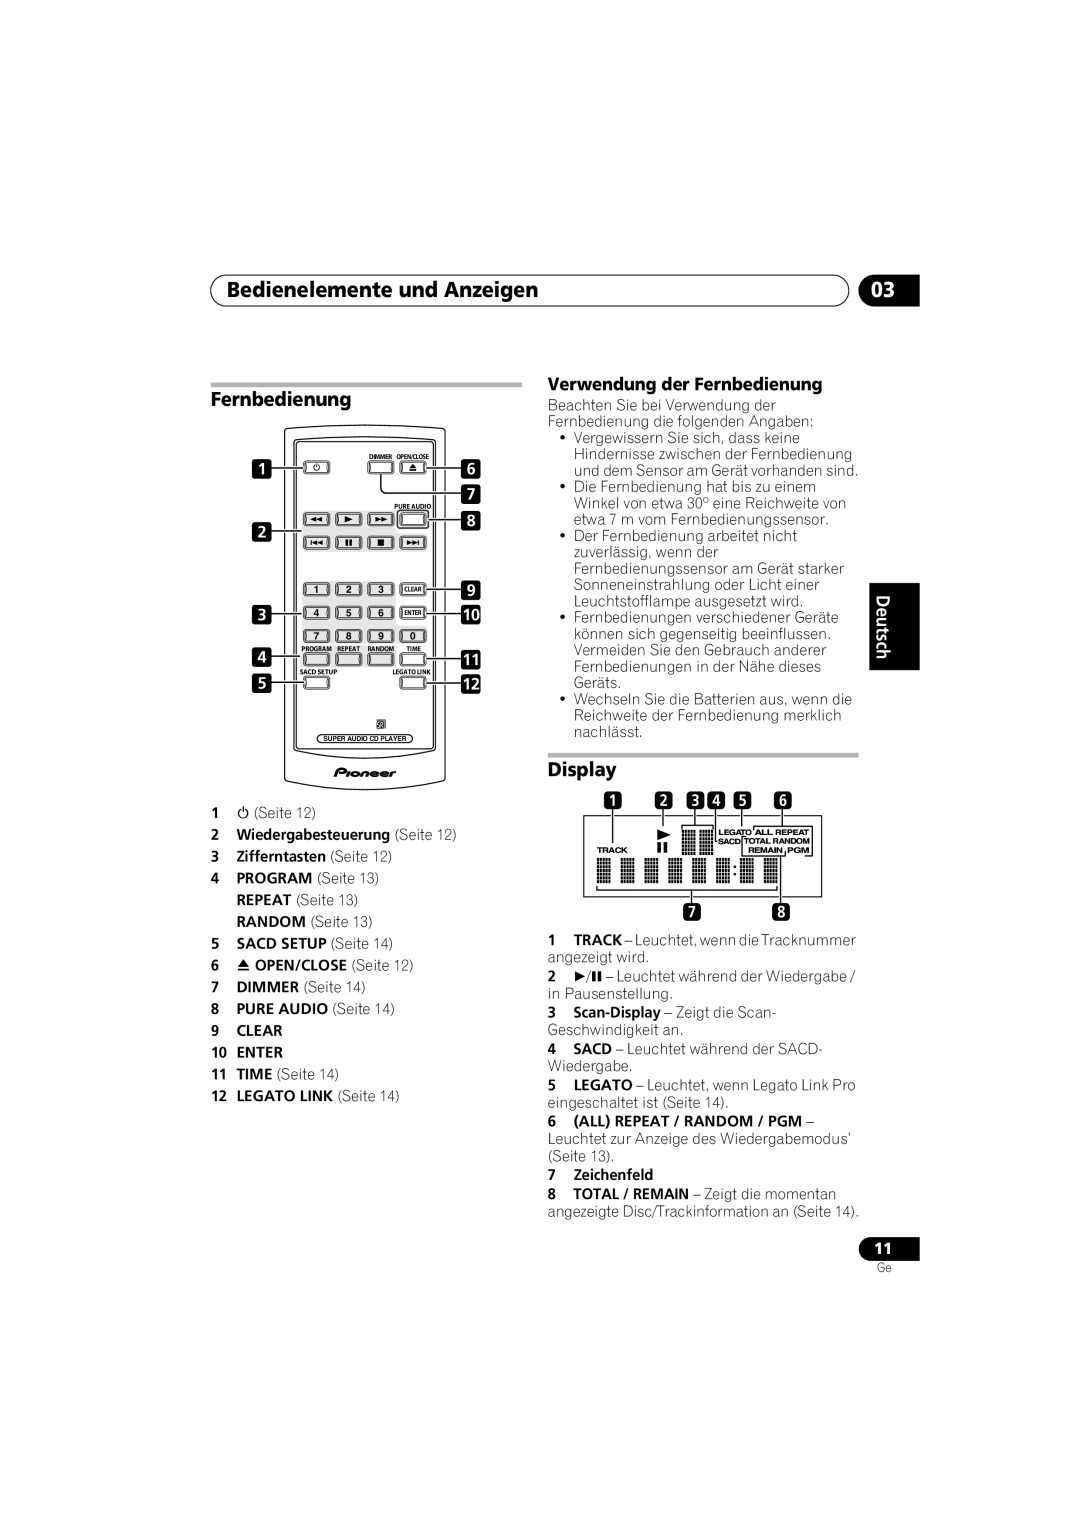 Pioneer PD-D6-J manual Bedienelemente und Anzeigen, Display, Verwendung der Fernbedienung, Español 